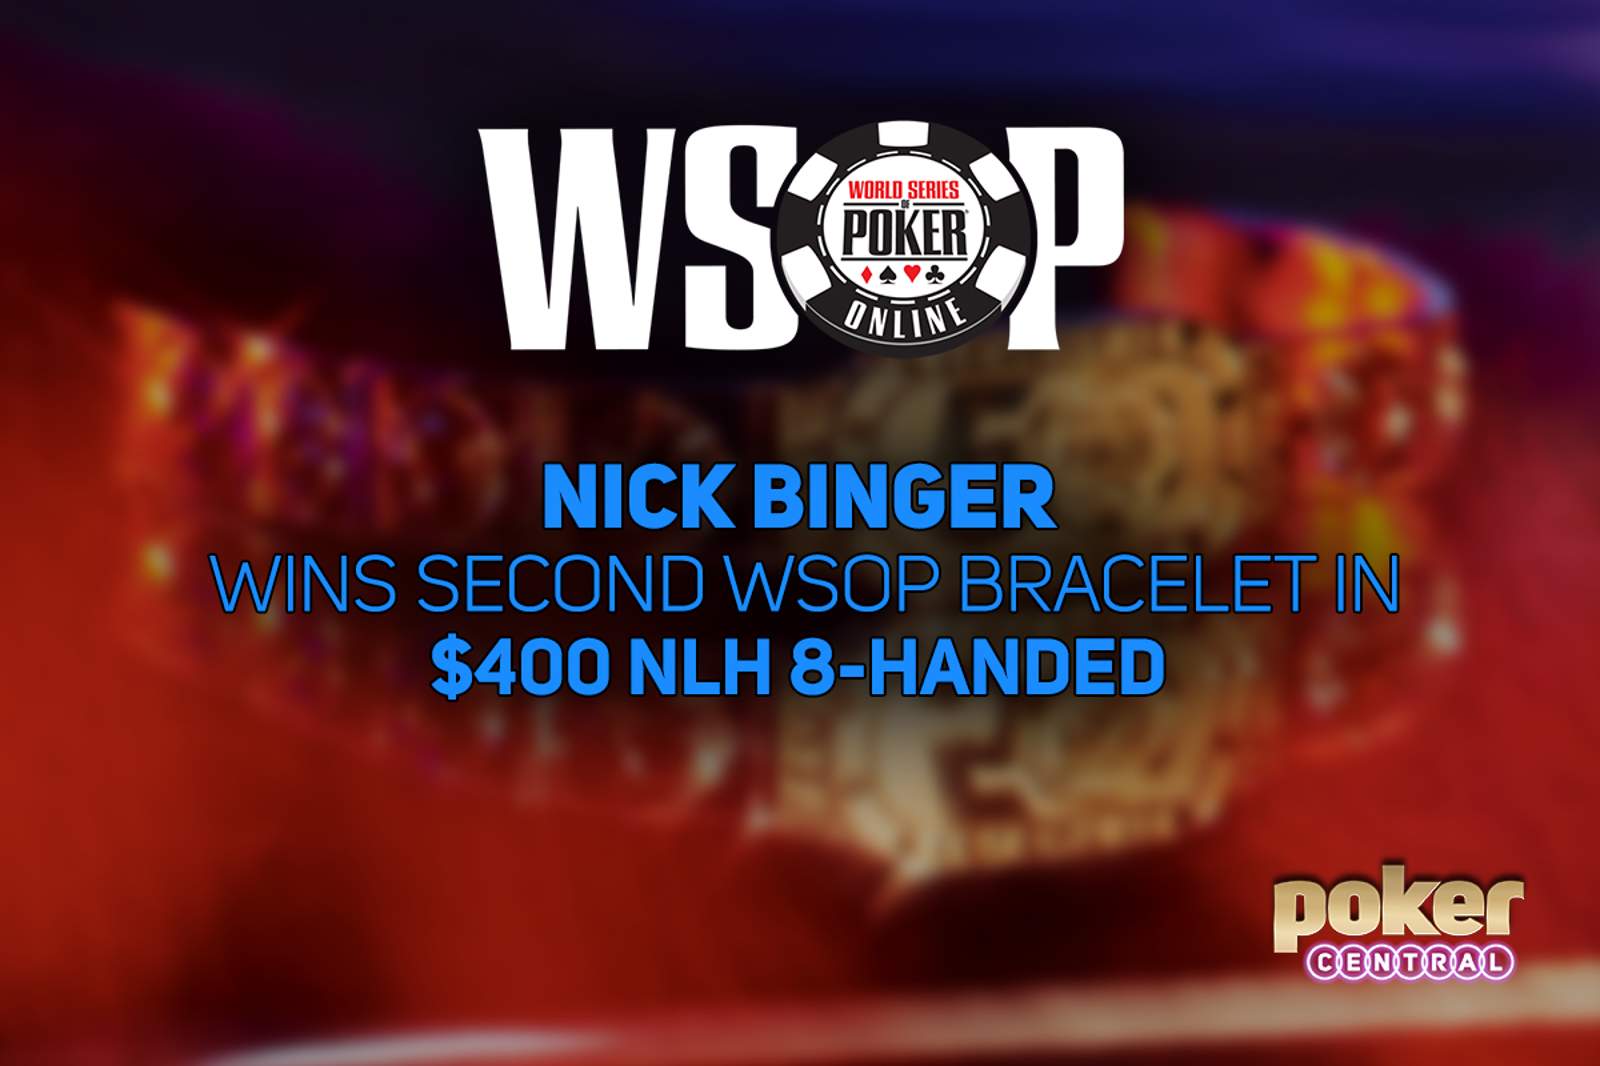 Nick Binger Wins Second Bracelet in WSOP Online $400 No-Limit Hold'em 8-Handed for $133,413